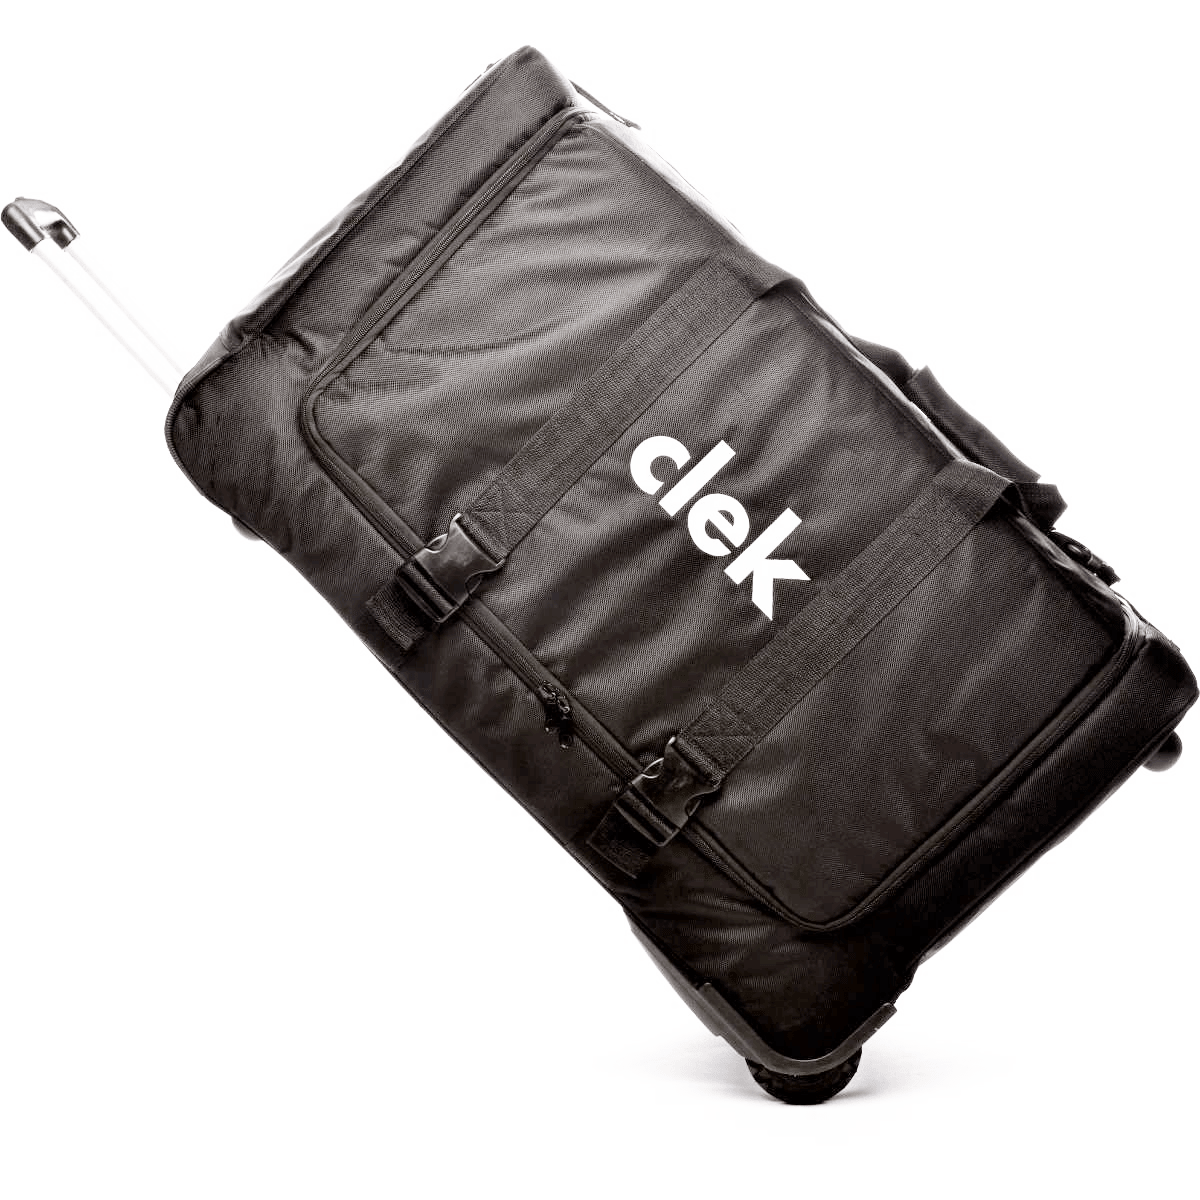 Clek Weelee Universal Car Seat Bag